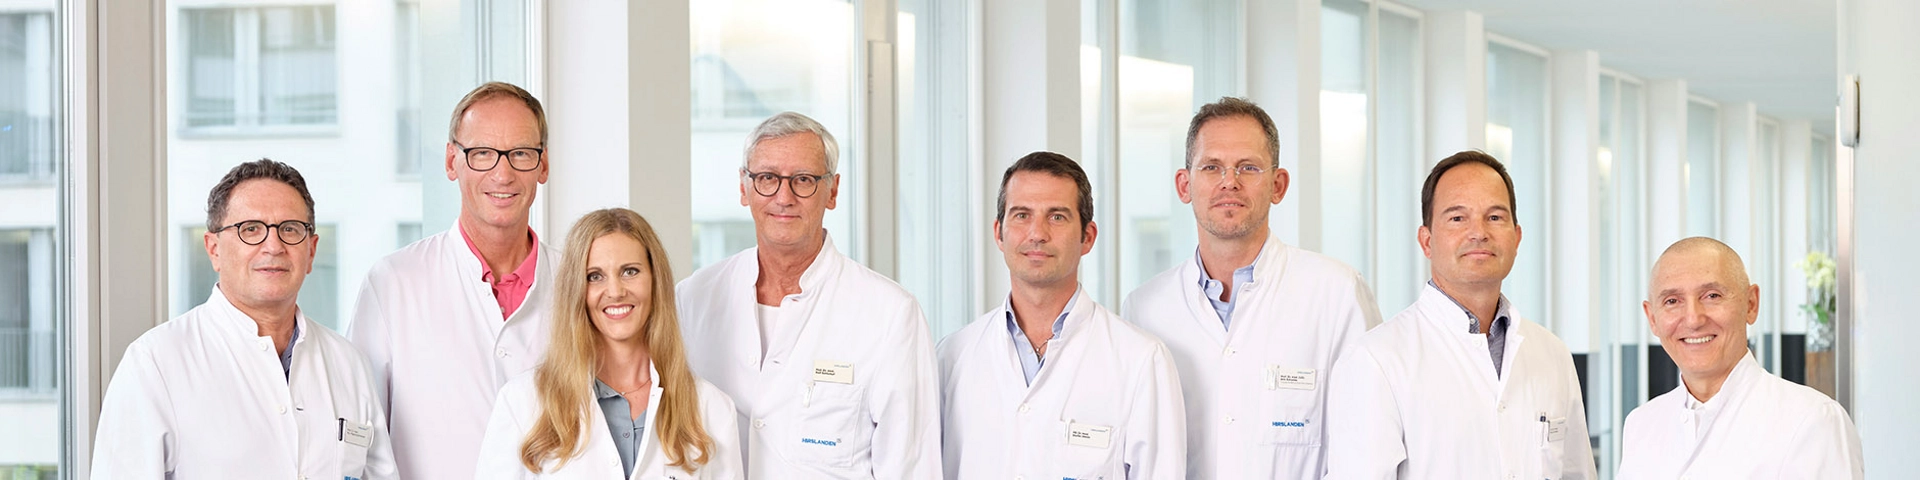  rzte thoraxchirurgie zurich Chirurgisches Zentrum Zürich - Standort Klinik Hirslanden